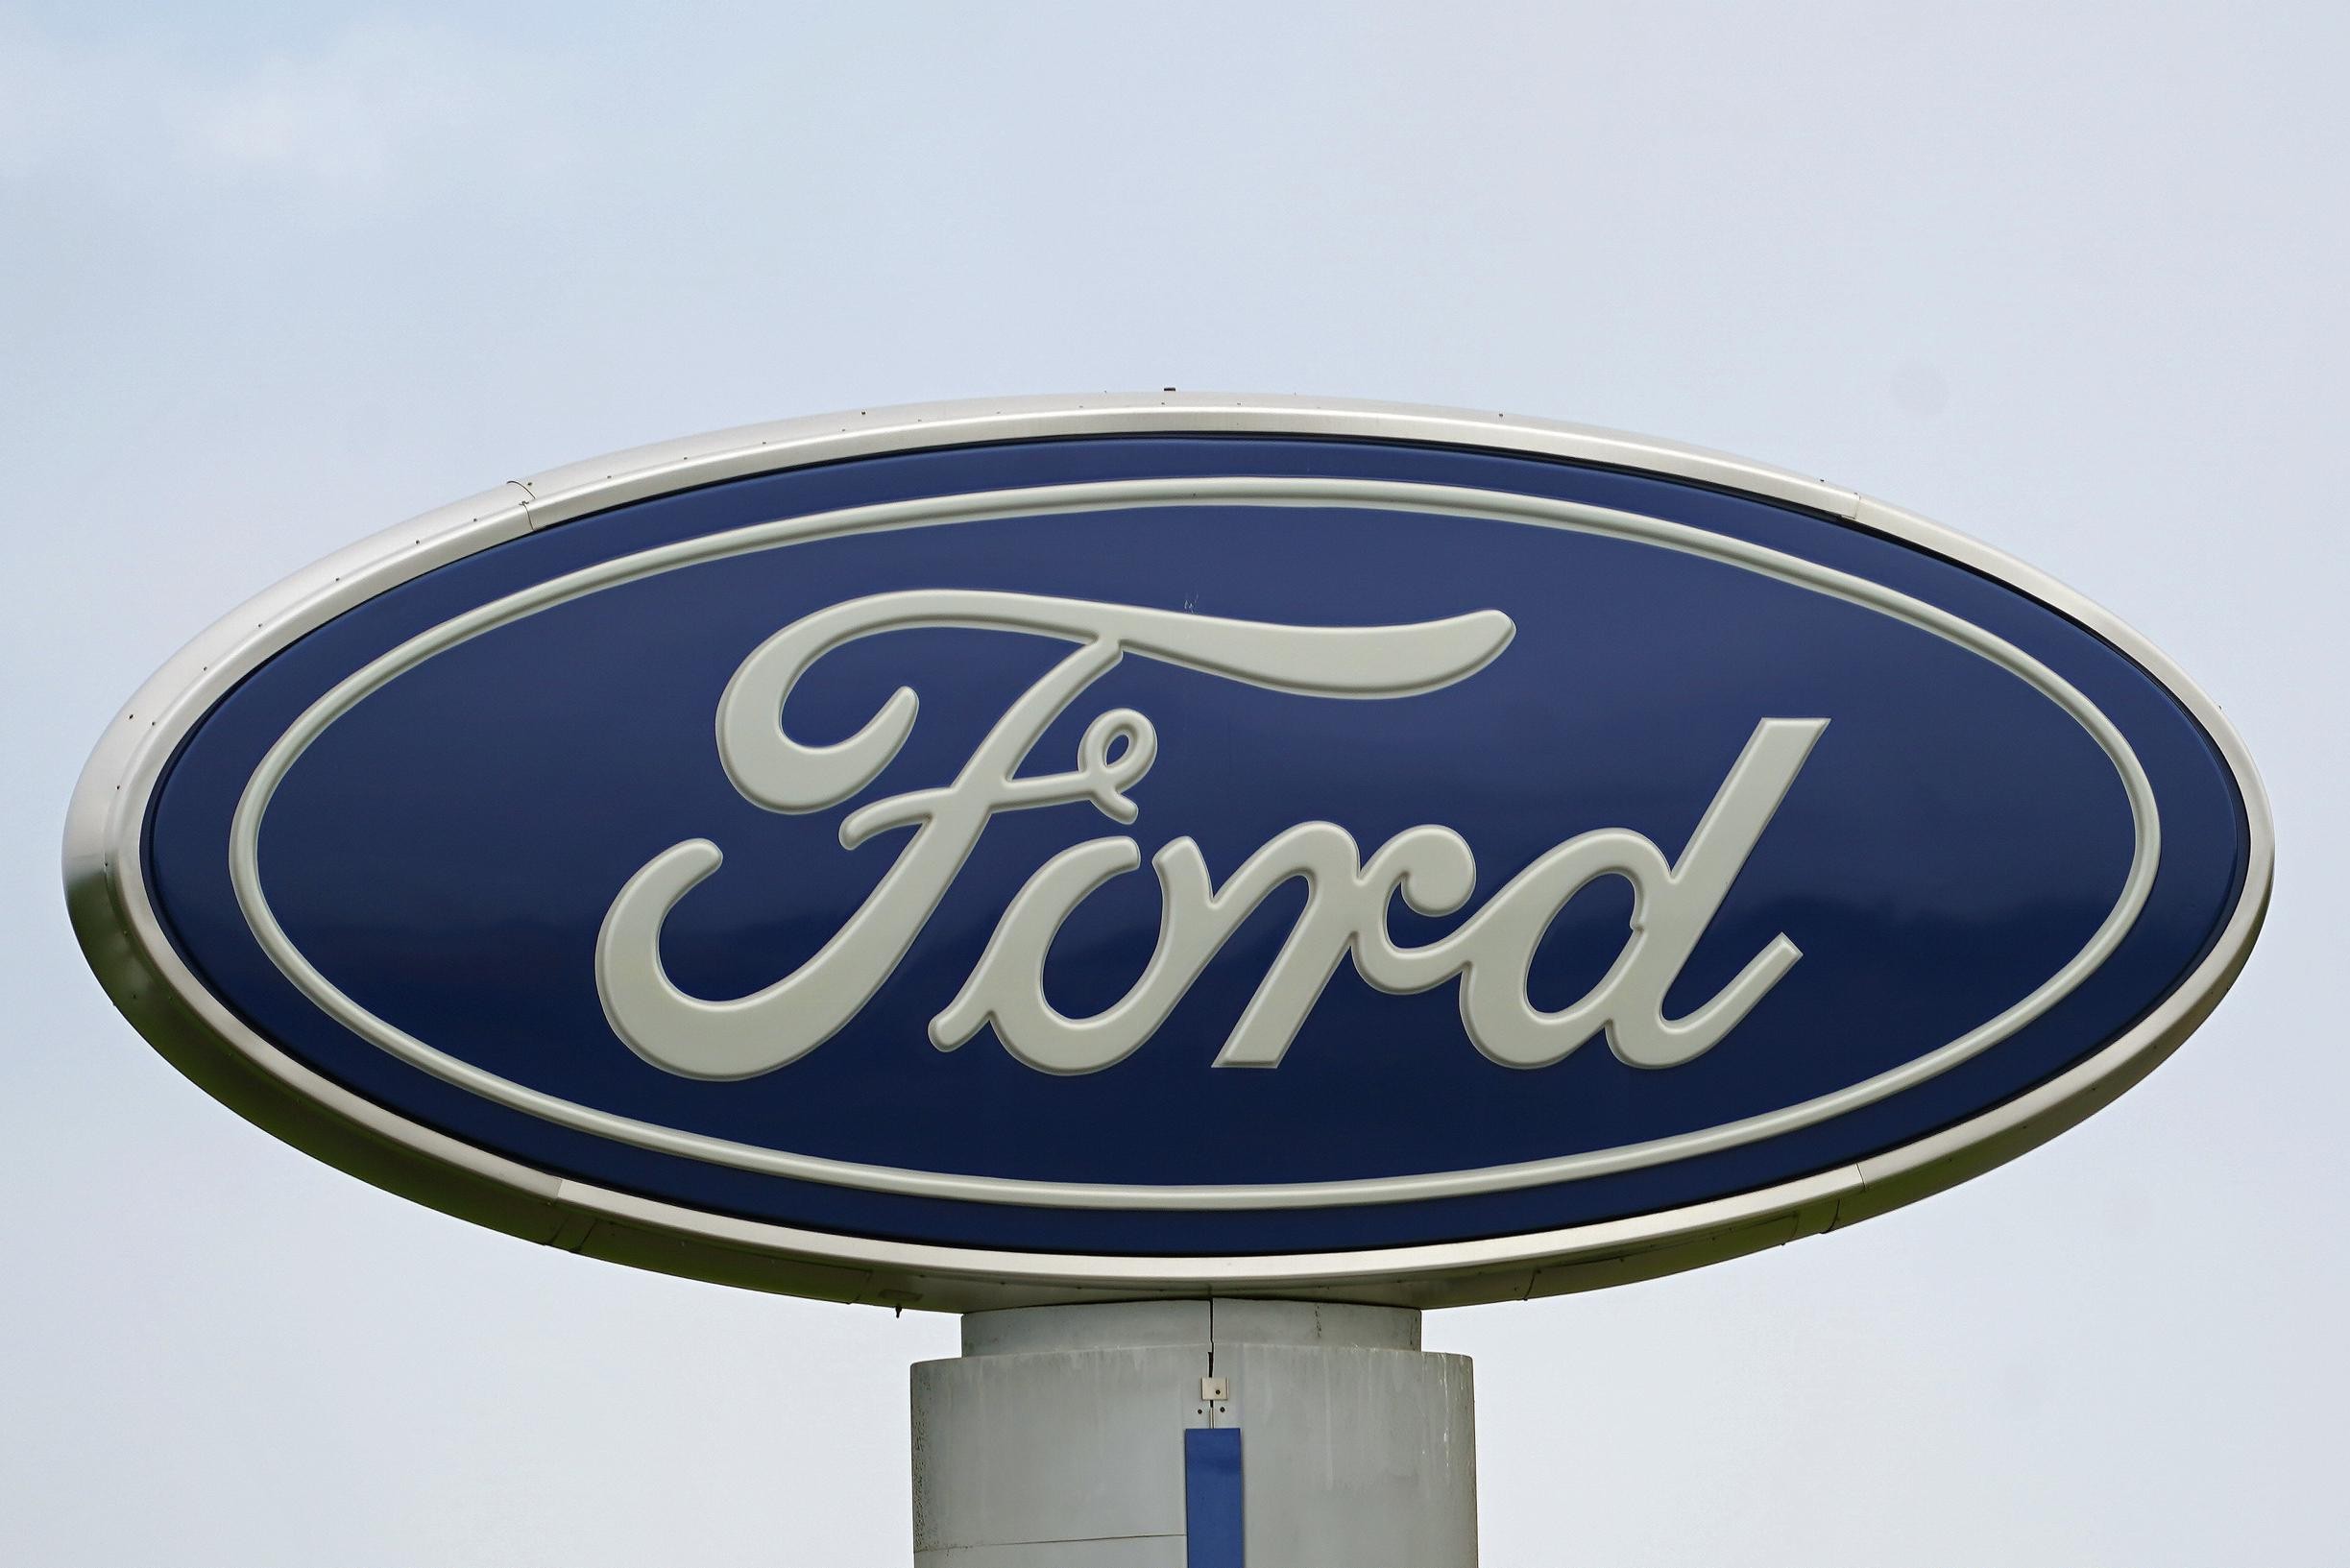 Presto Ford non potrà vendere automobili in Germania